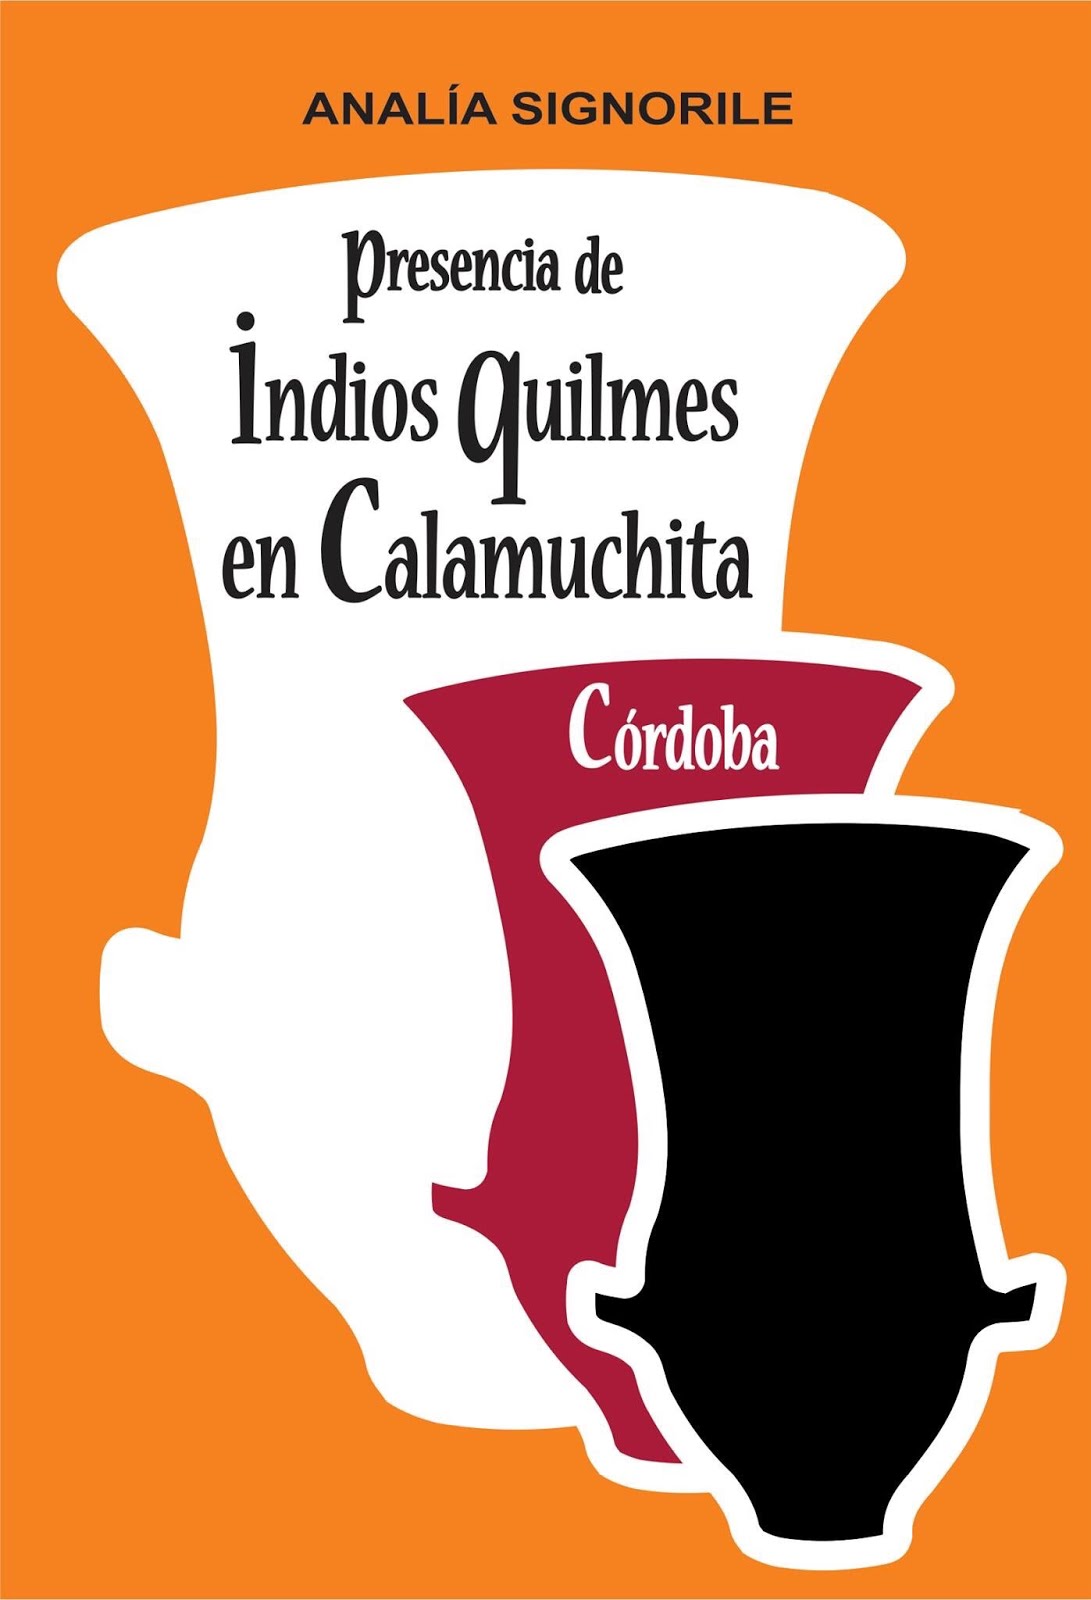 Quilmes en Calamuchita